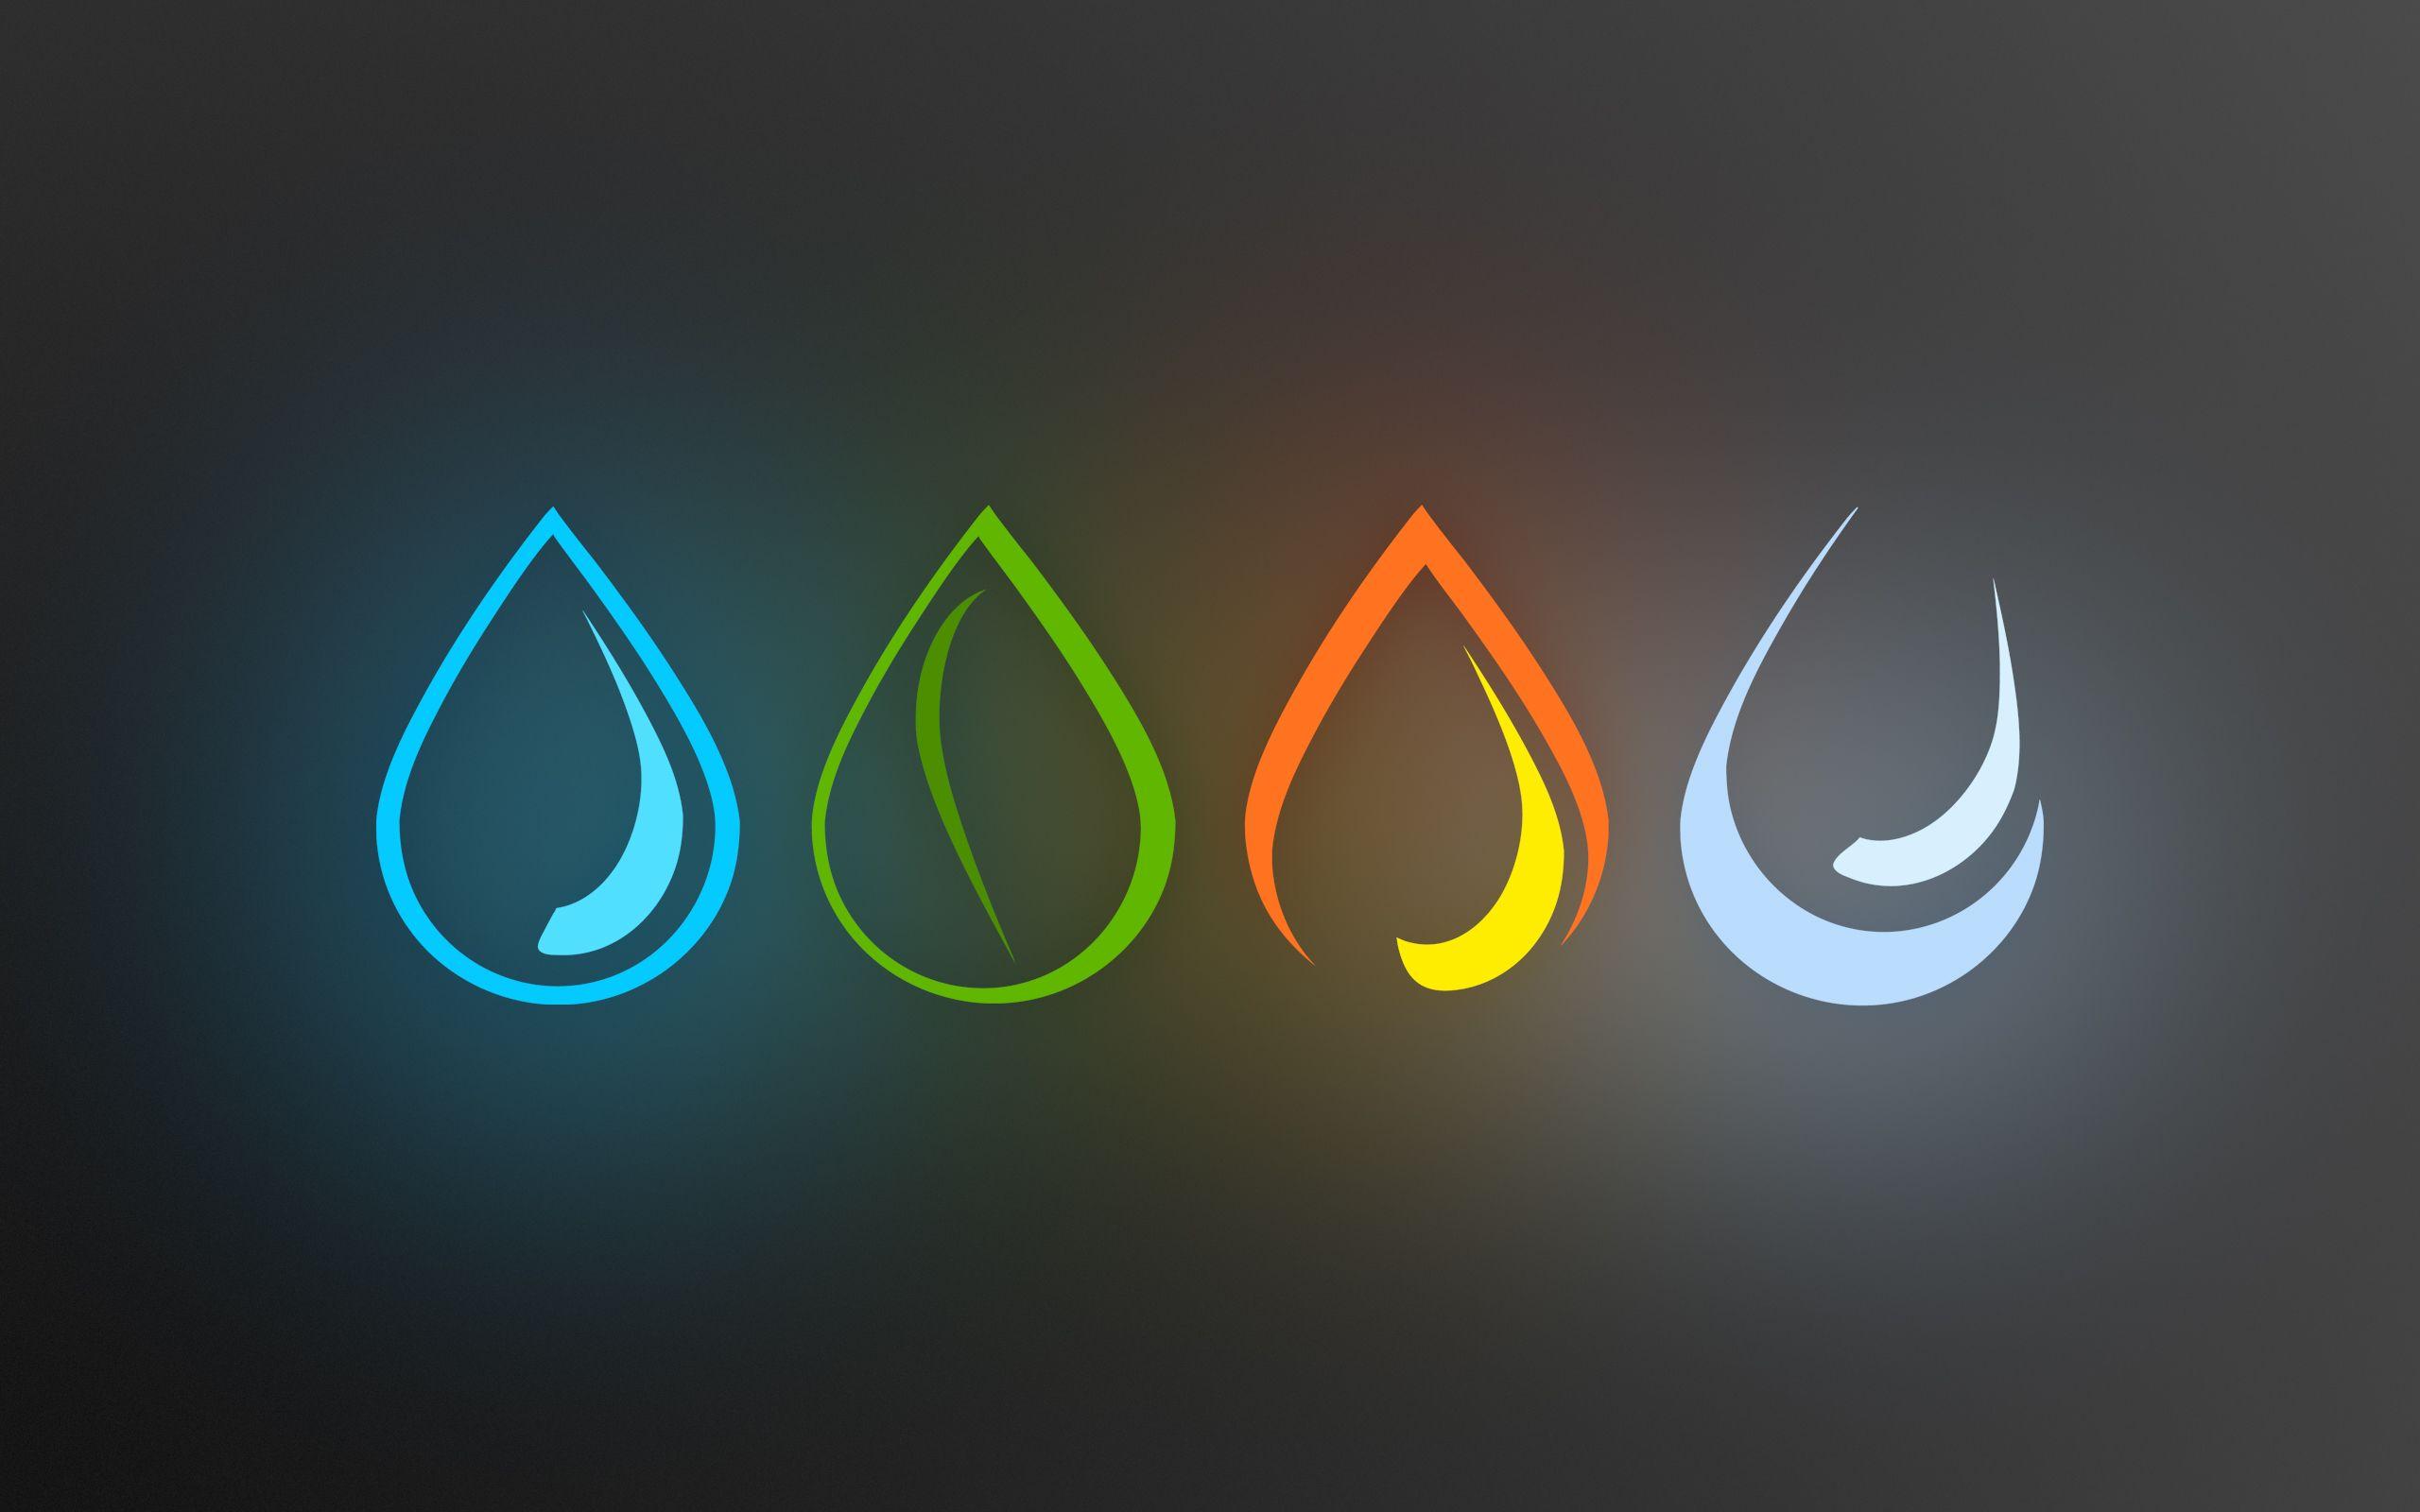 4 elements of life symbols